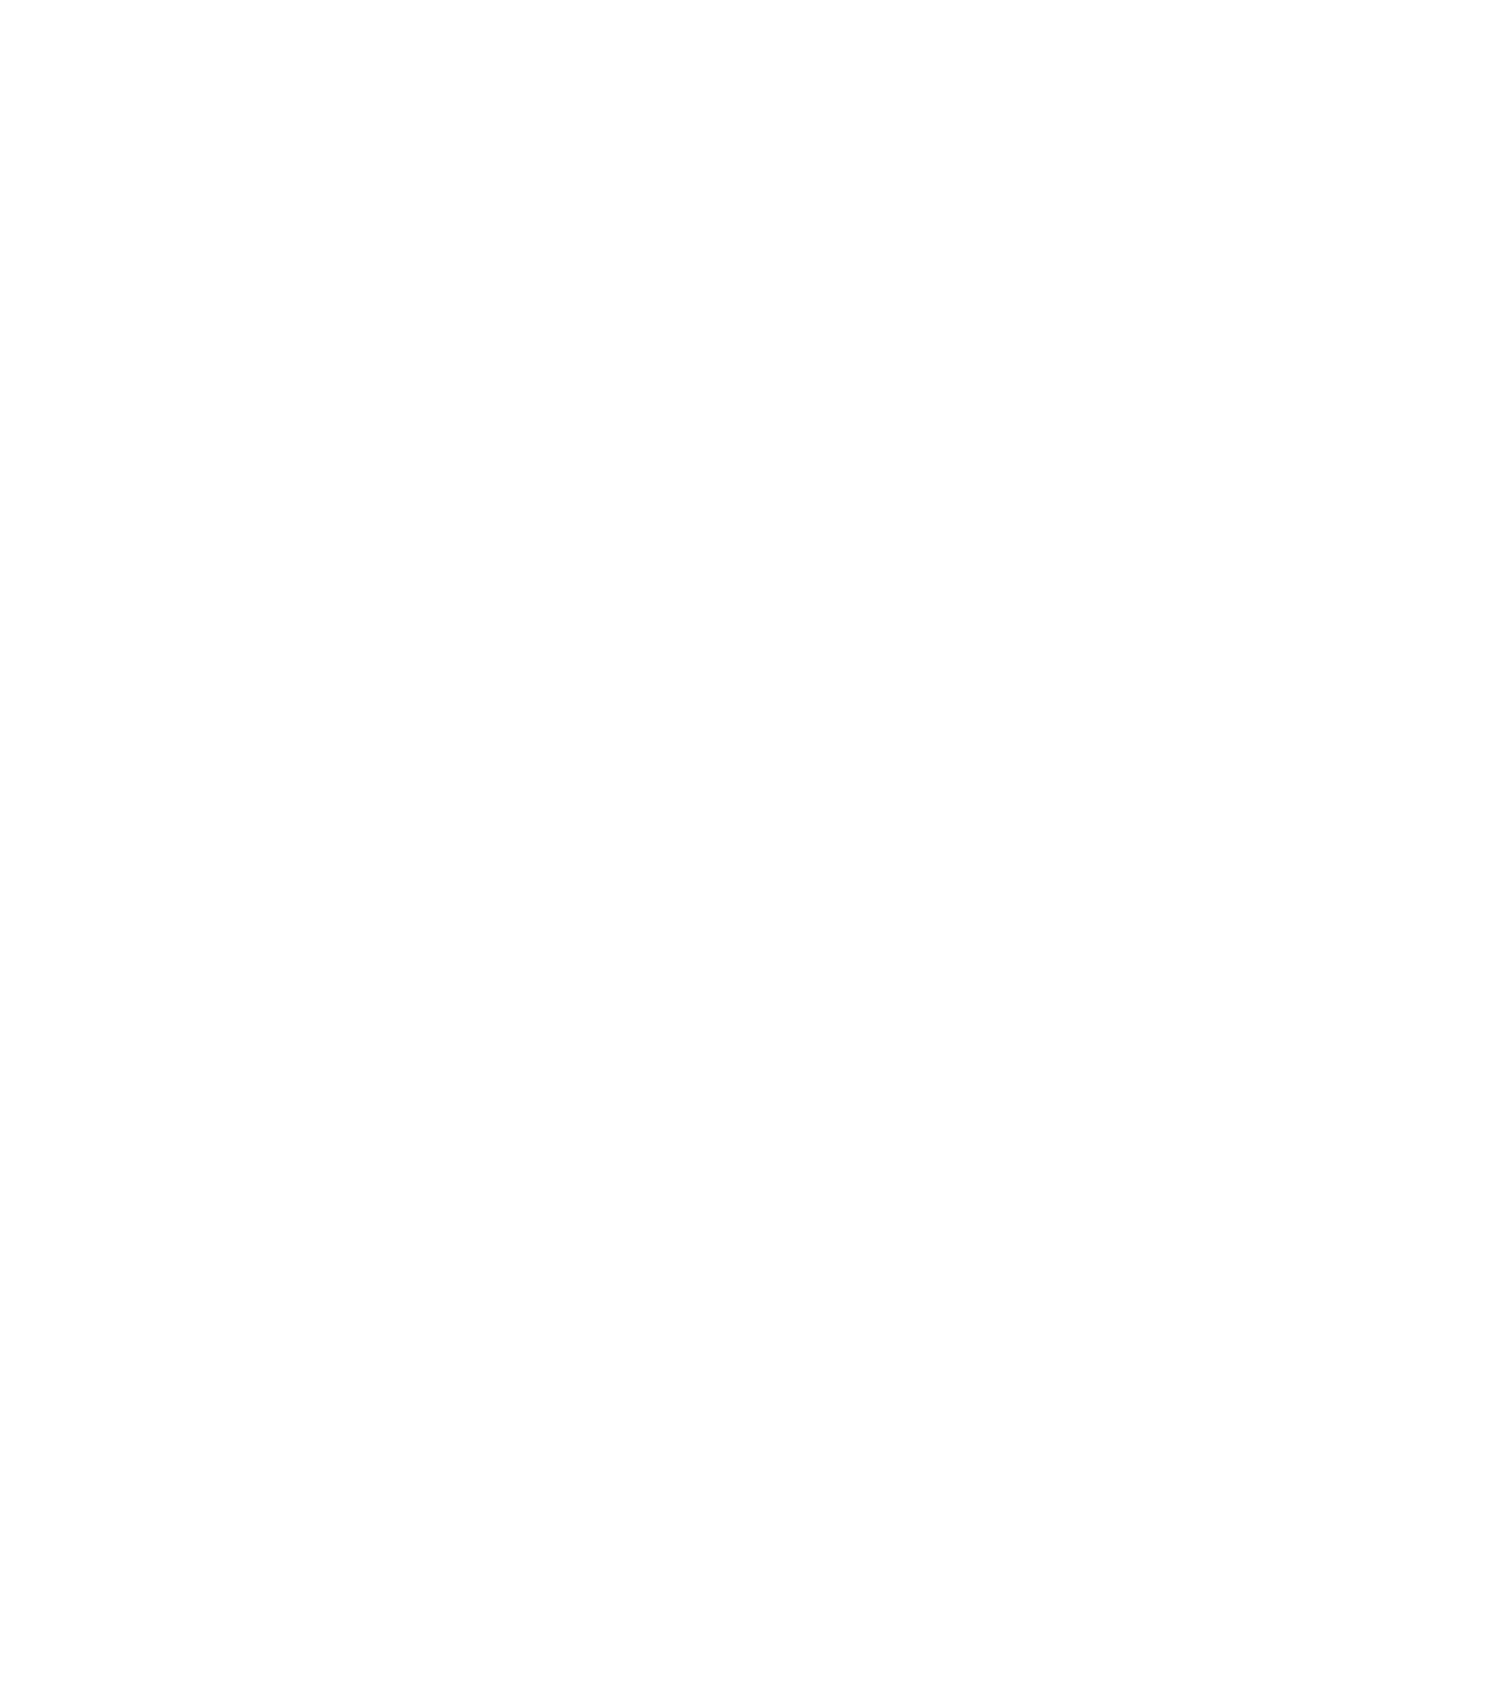 LANCYL GARDENS